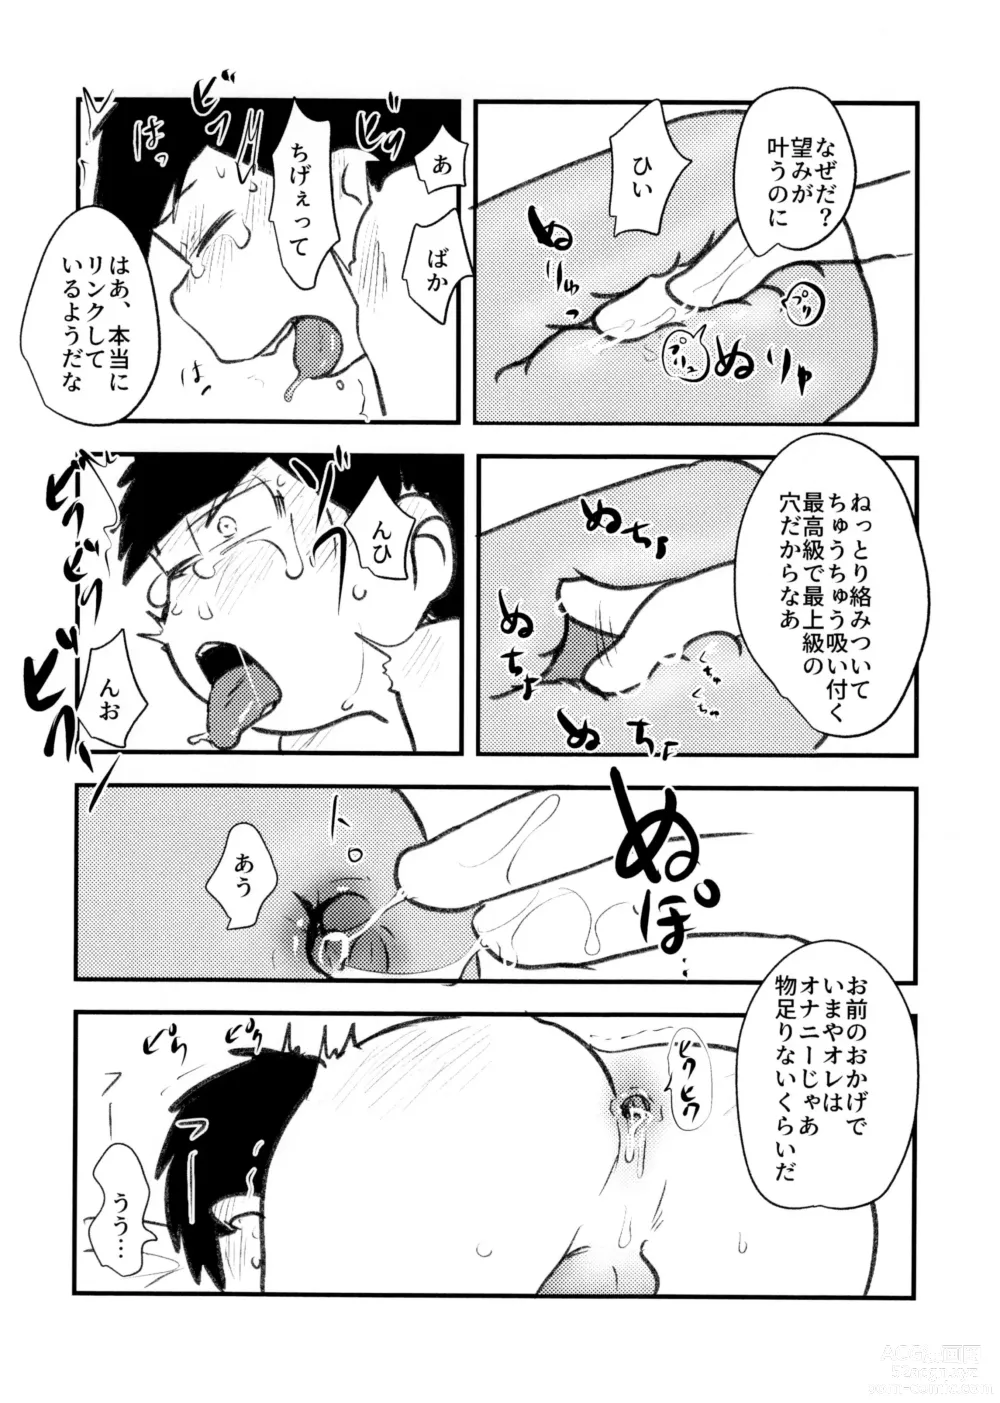 Page 10 of doujinshi Guchuguchu Nuchinuchu Mahou no Doppyun Onaho de Sotsugyou